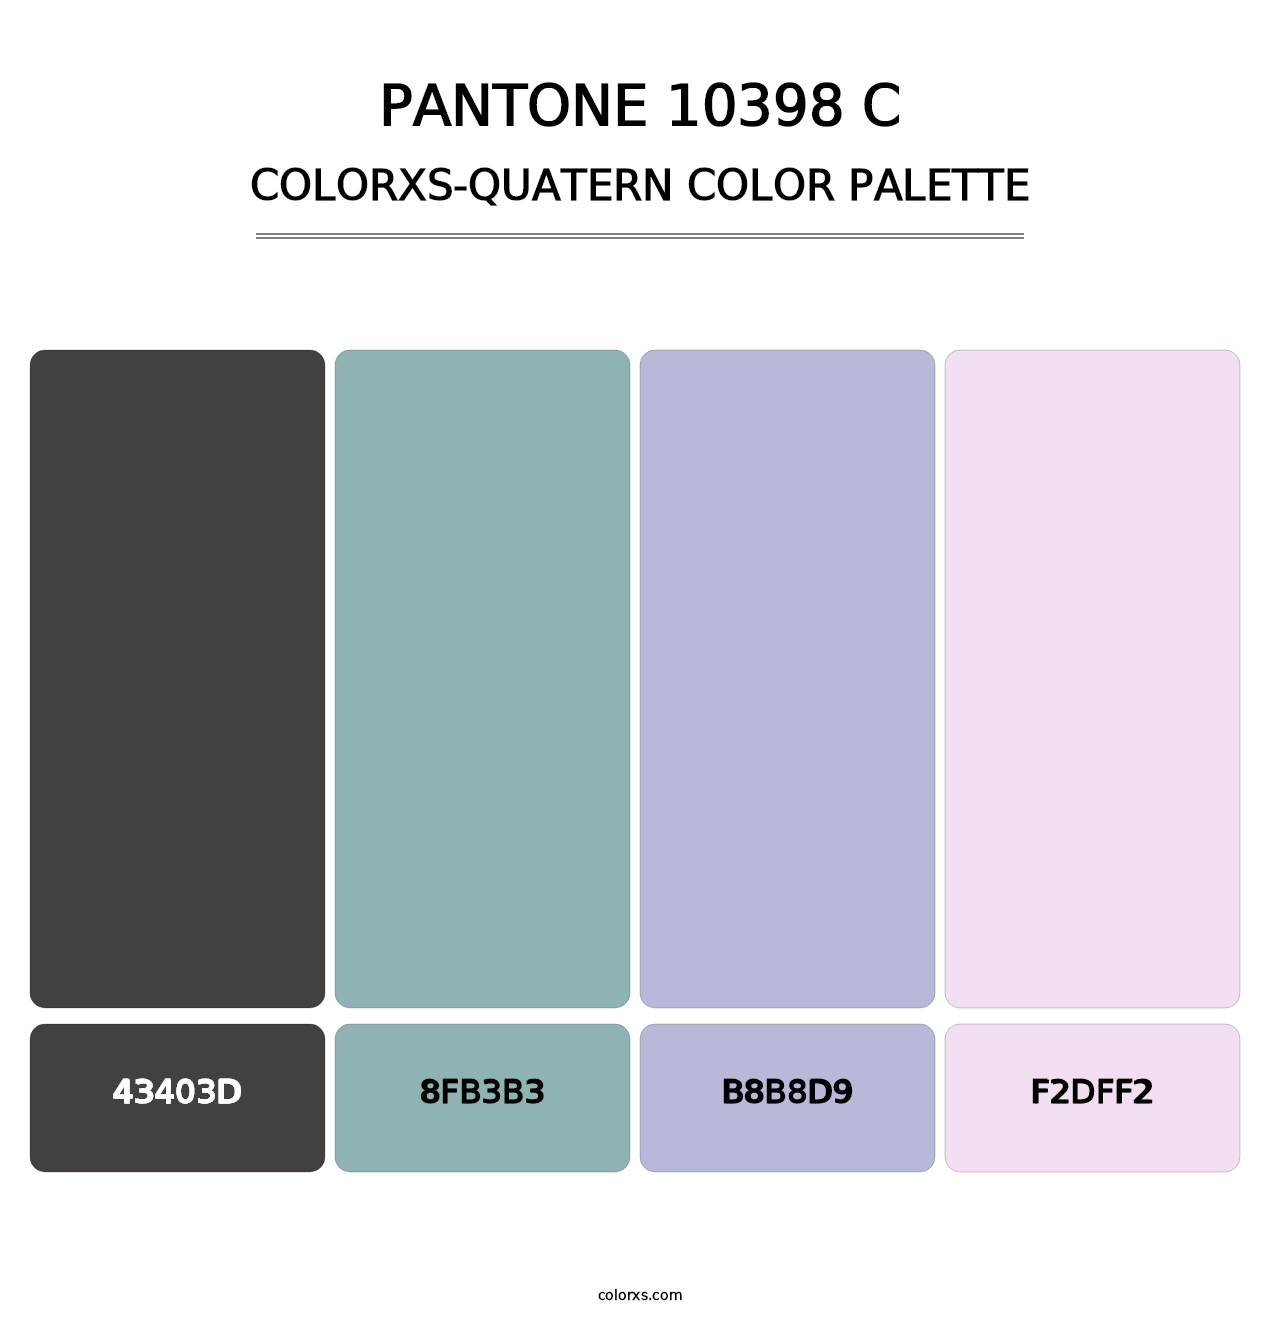 PANTONE 10398 C - Colorxs Quatern Palette